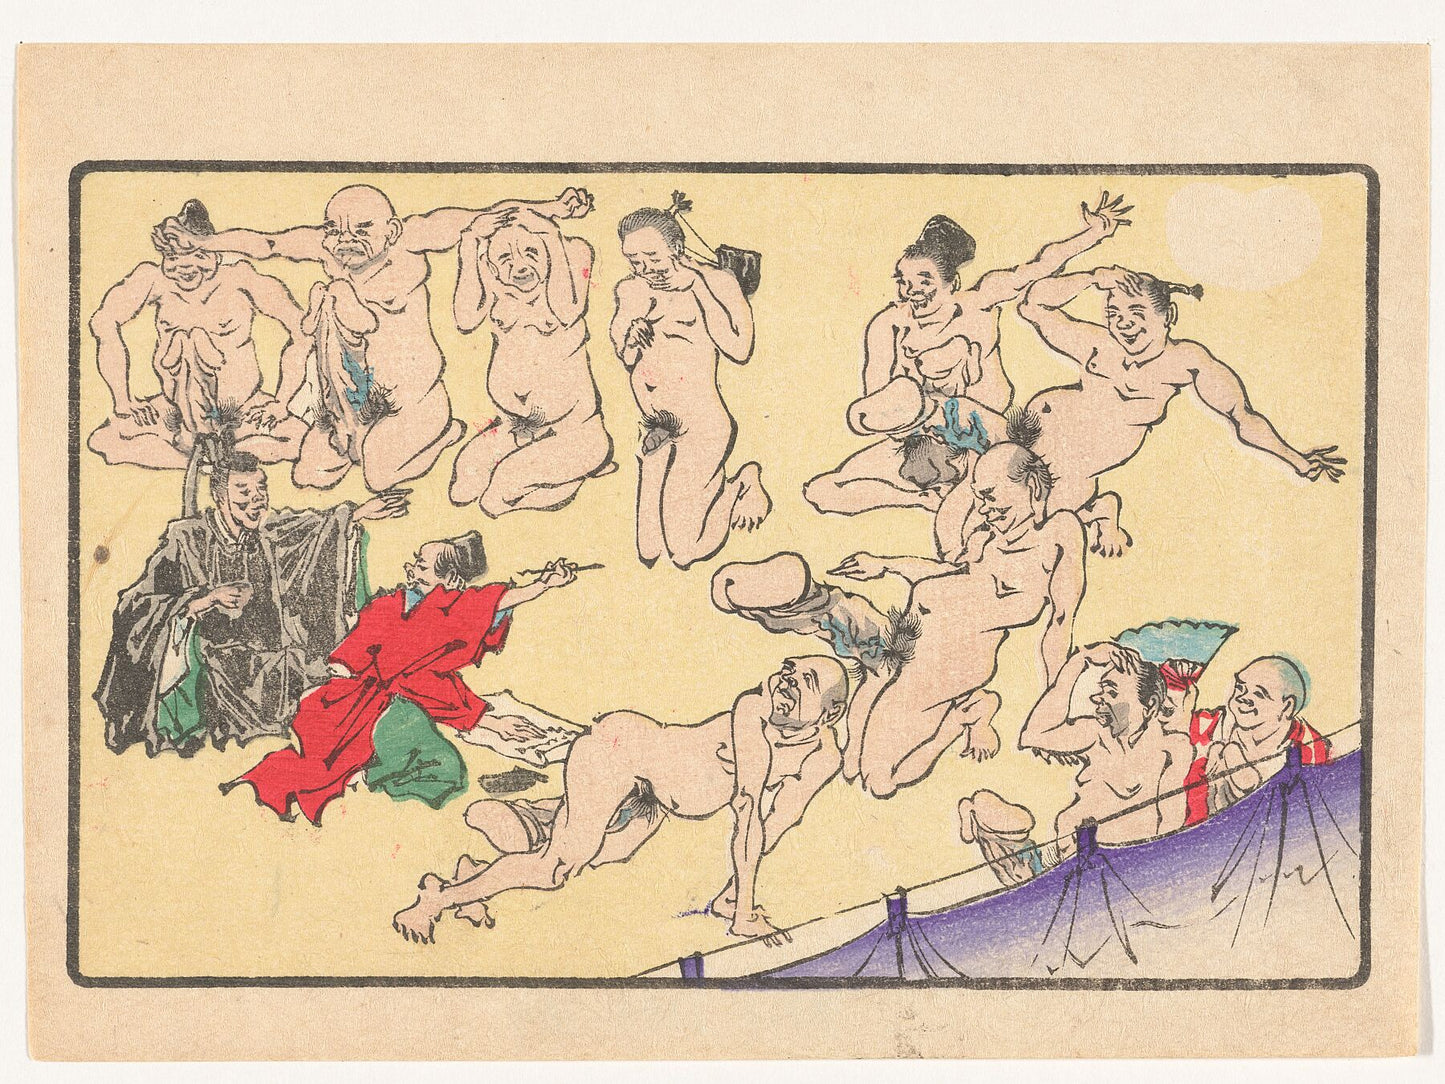 Penis Contest by Kawanabe Kyōsai - 1870